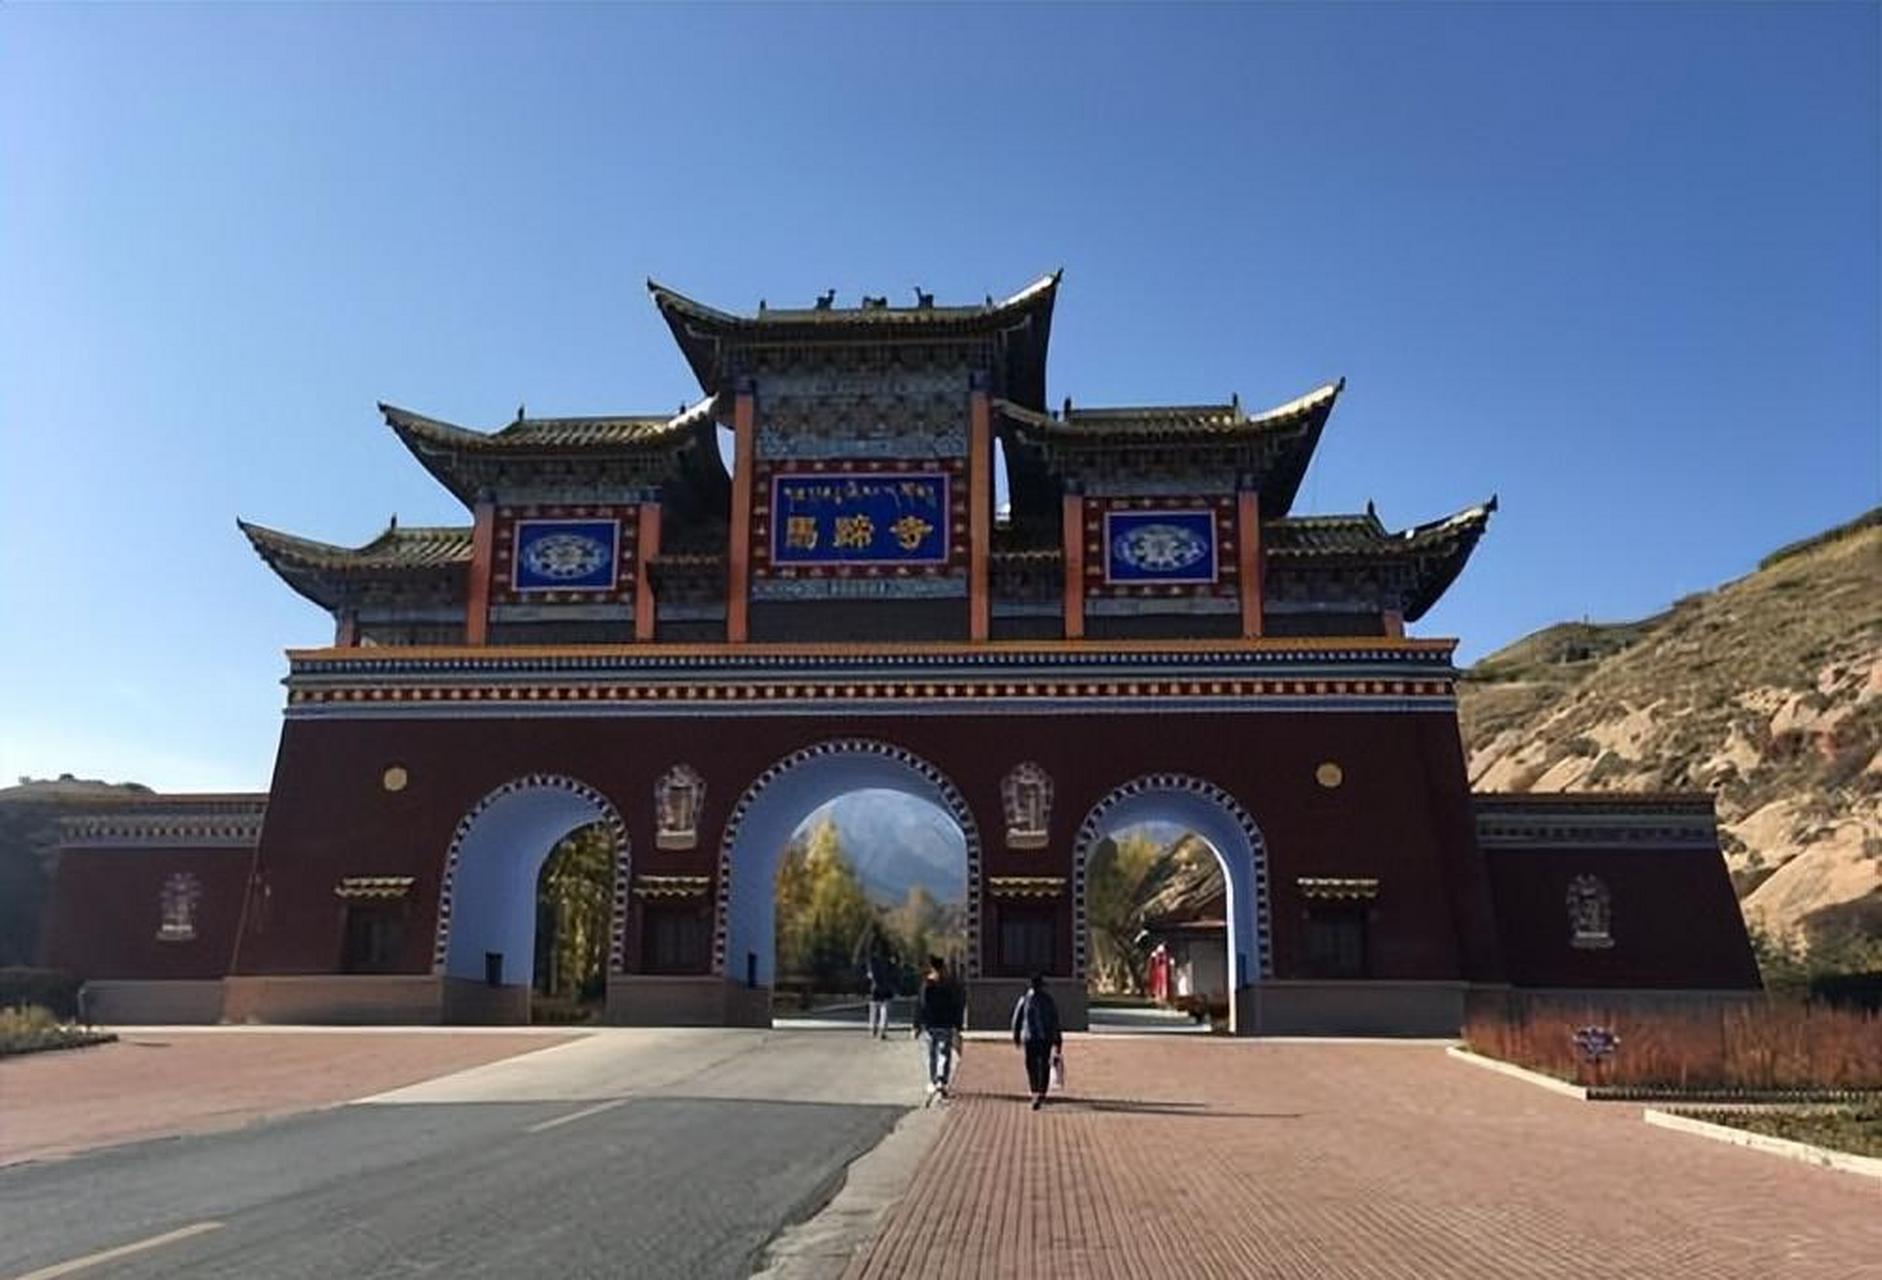 马蹄寺位于中国甘肃省肃南裕固族自治县,是一个有着丰富历史和传说的